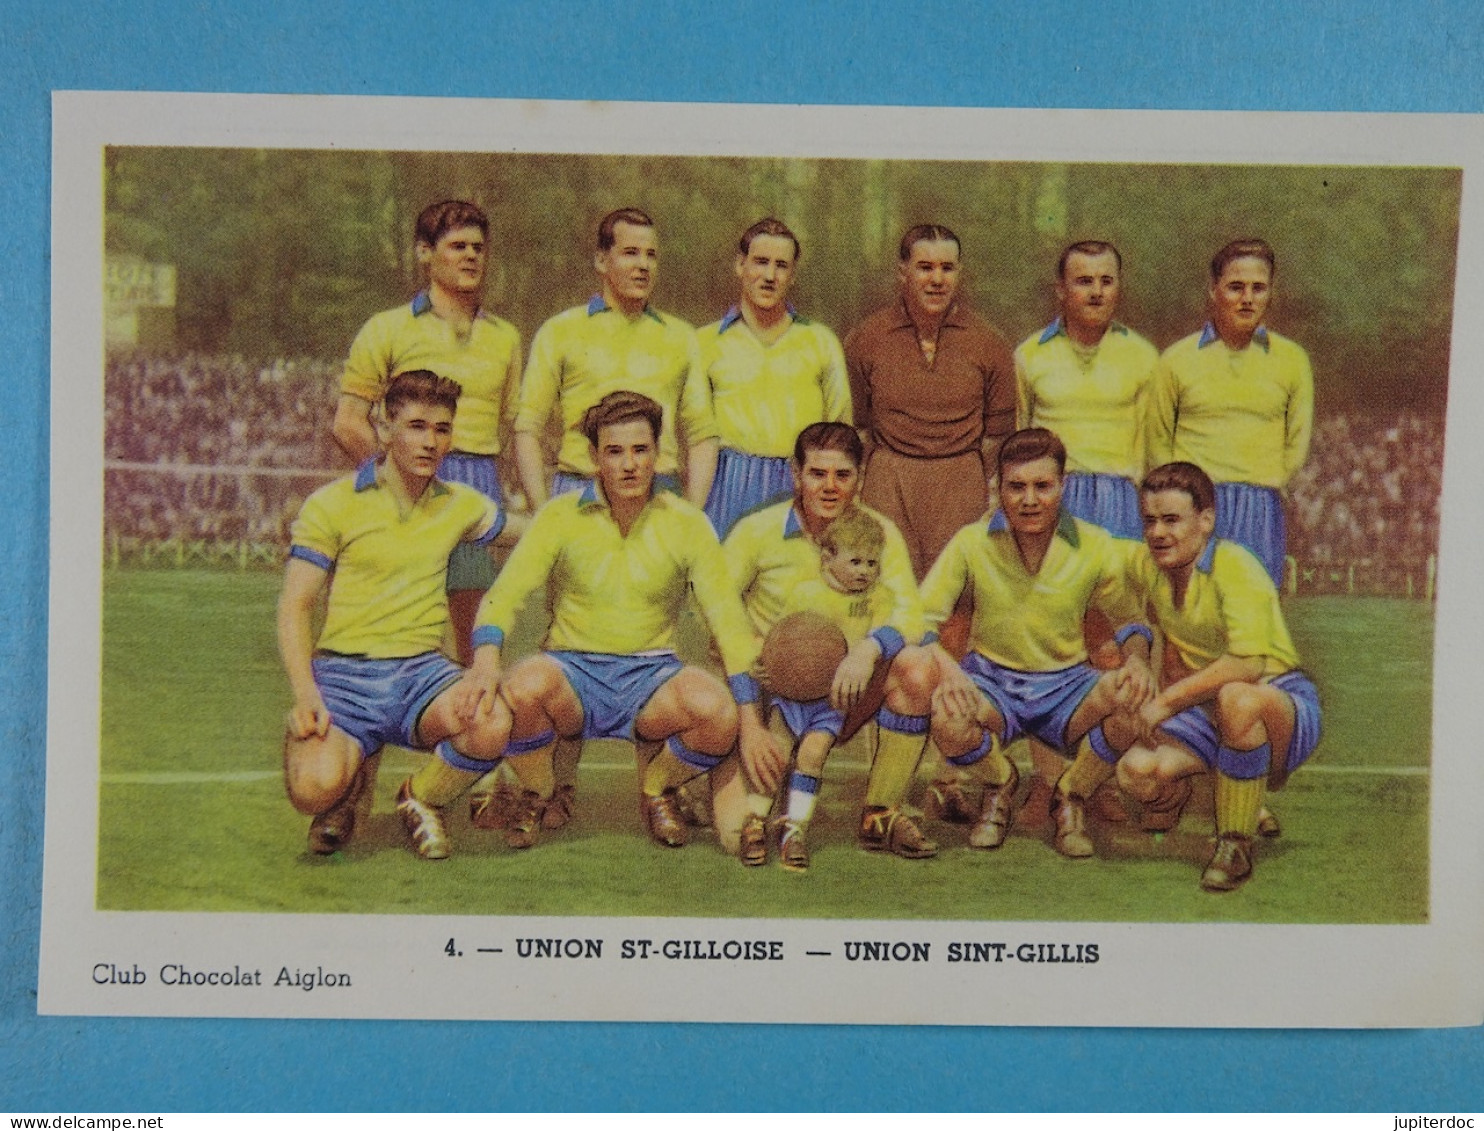 Lot de 6 équipes belges de D1 dans les années 50 (quelques joueurs cités à l'arrière)